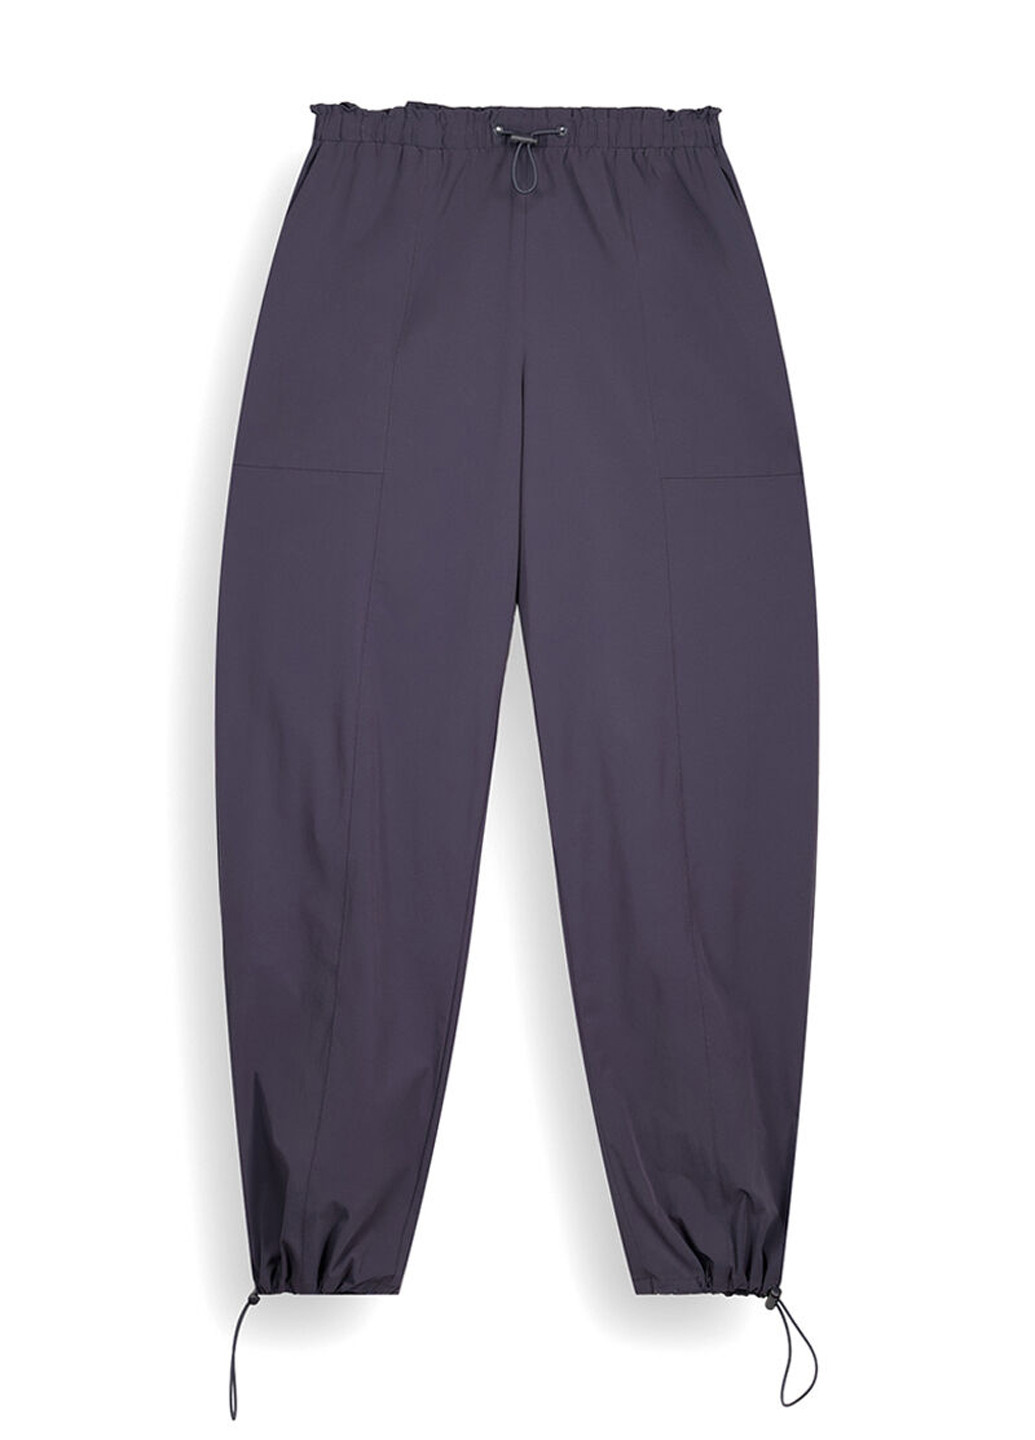 Темно-серые кэжуал демисезонные джоггеры брюки Women'secret